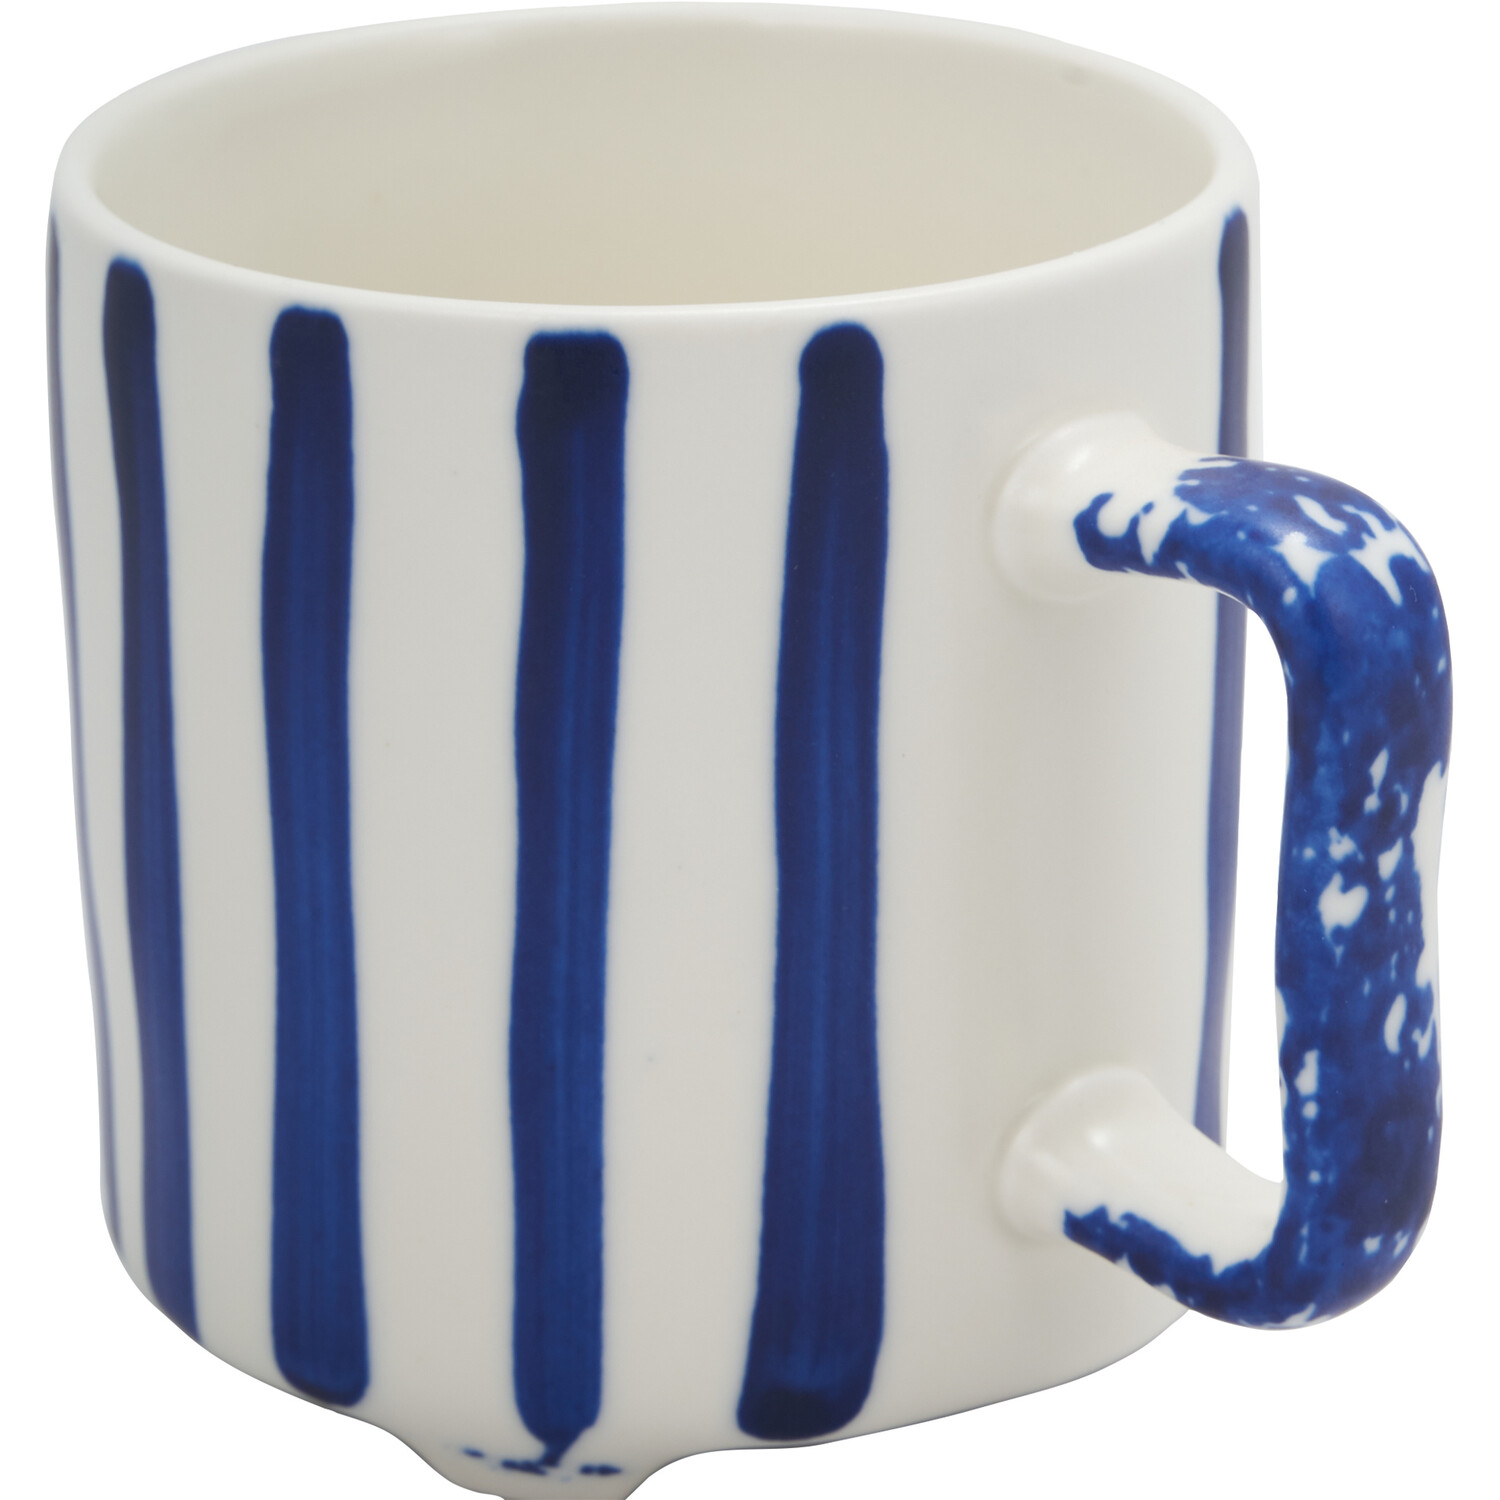 White and Blue Mug - Blue Image 2